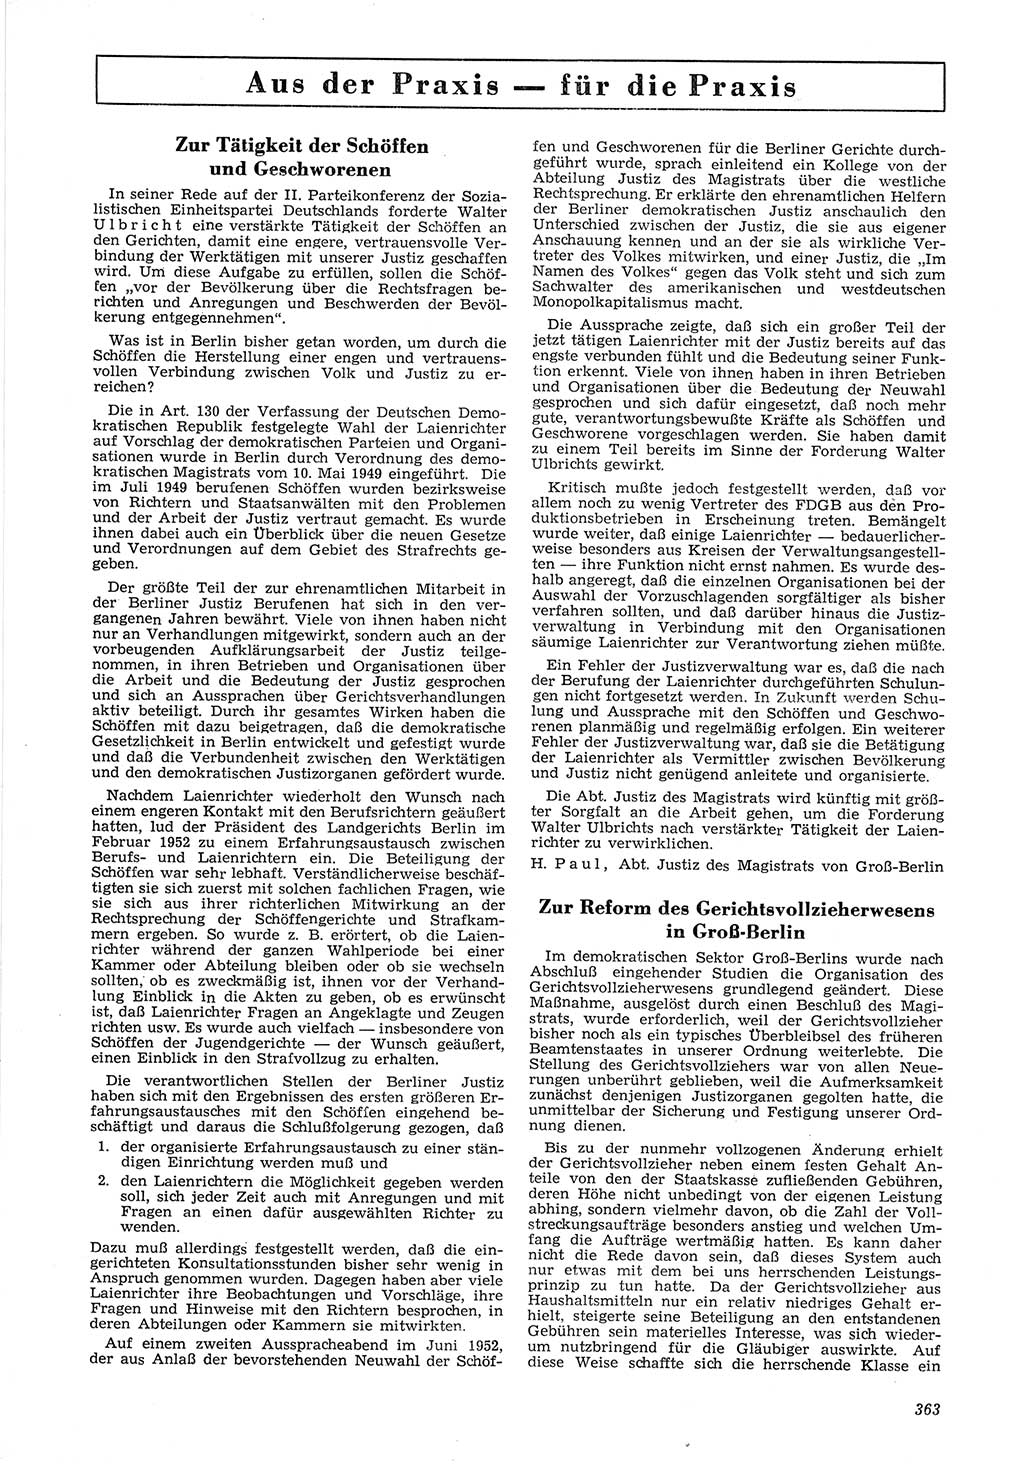 Neue Justiz (NJ), Zeitschrift für Recht und Rechtswissenschaft [Deutsche Demokratische Republik (DDR)], 6. Jahrgang 1952, Seite 363 (NJ DDR 1952, S. 363)